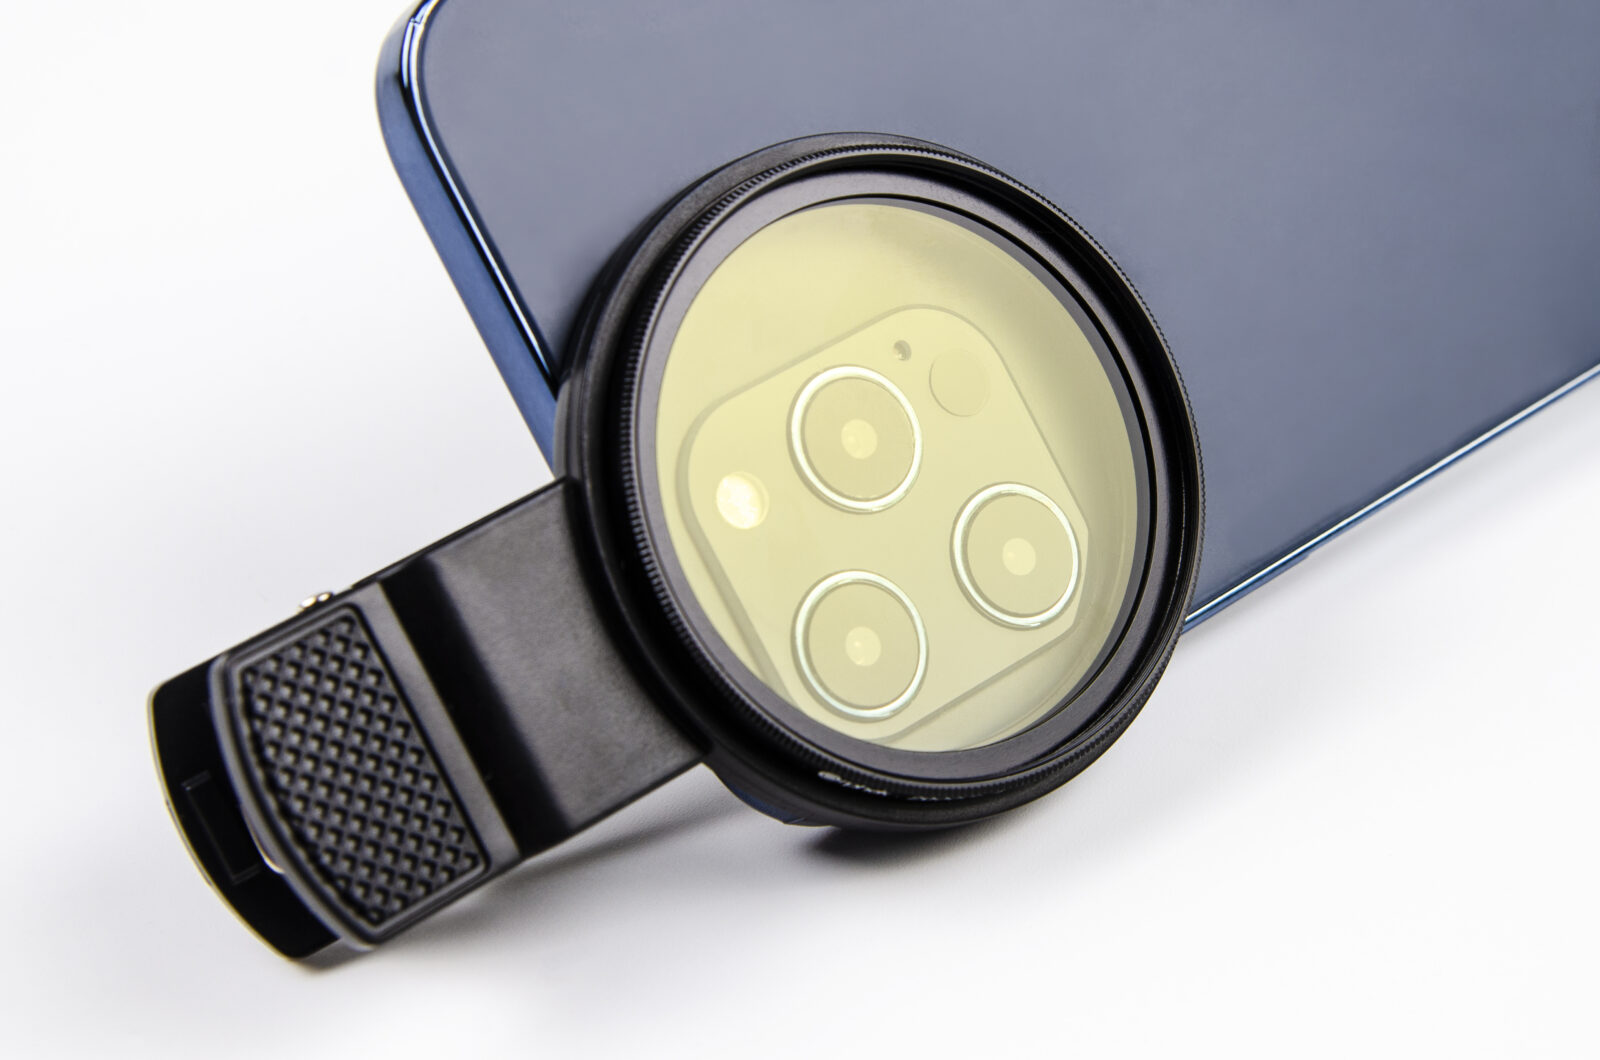 Coral Lens Kit porta un nuovo obiettivo extra più ampio di 52 mm